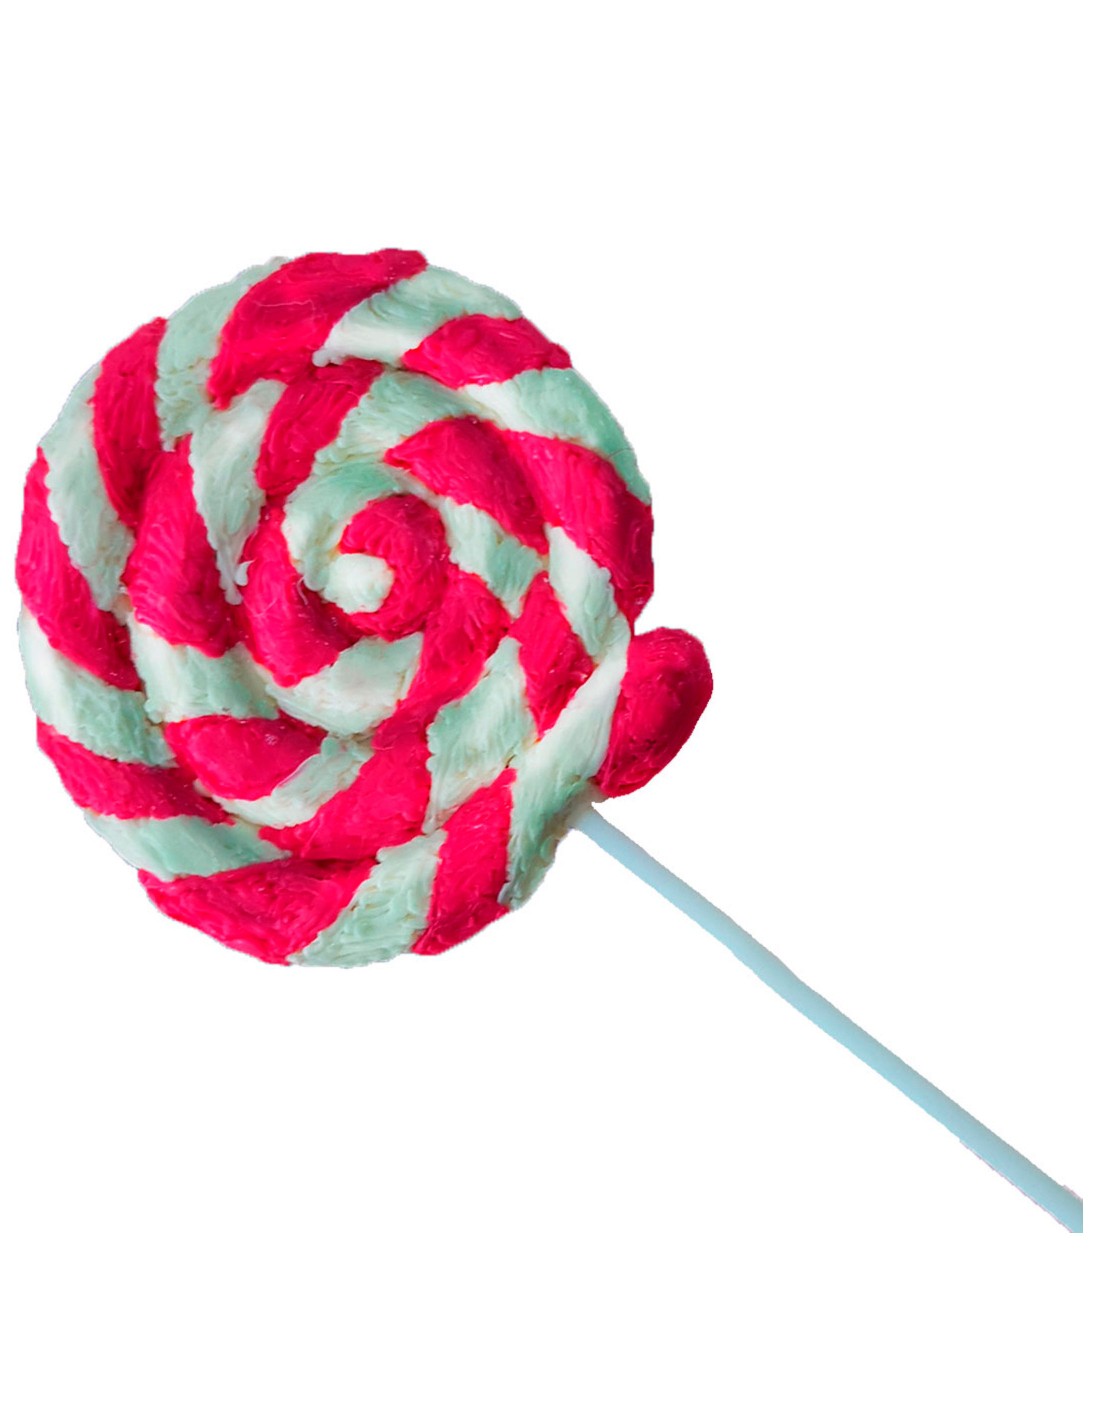 Lollipop (Free Template For a 3D Pen)